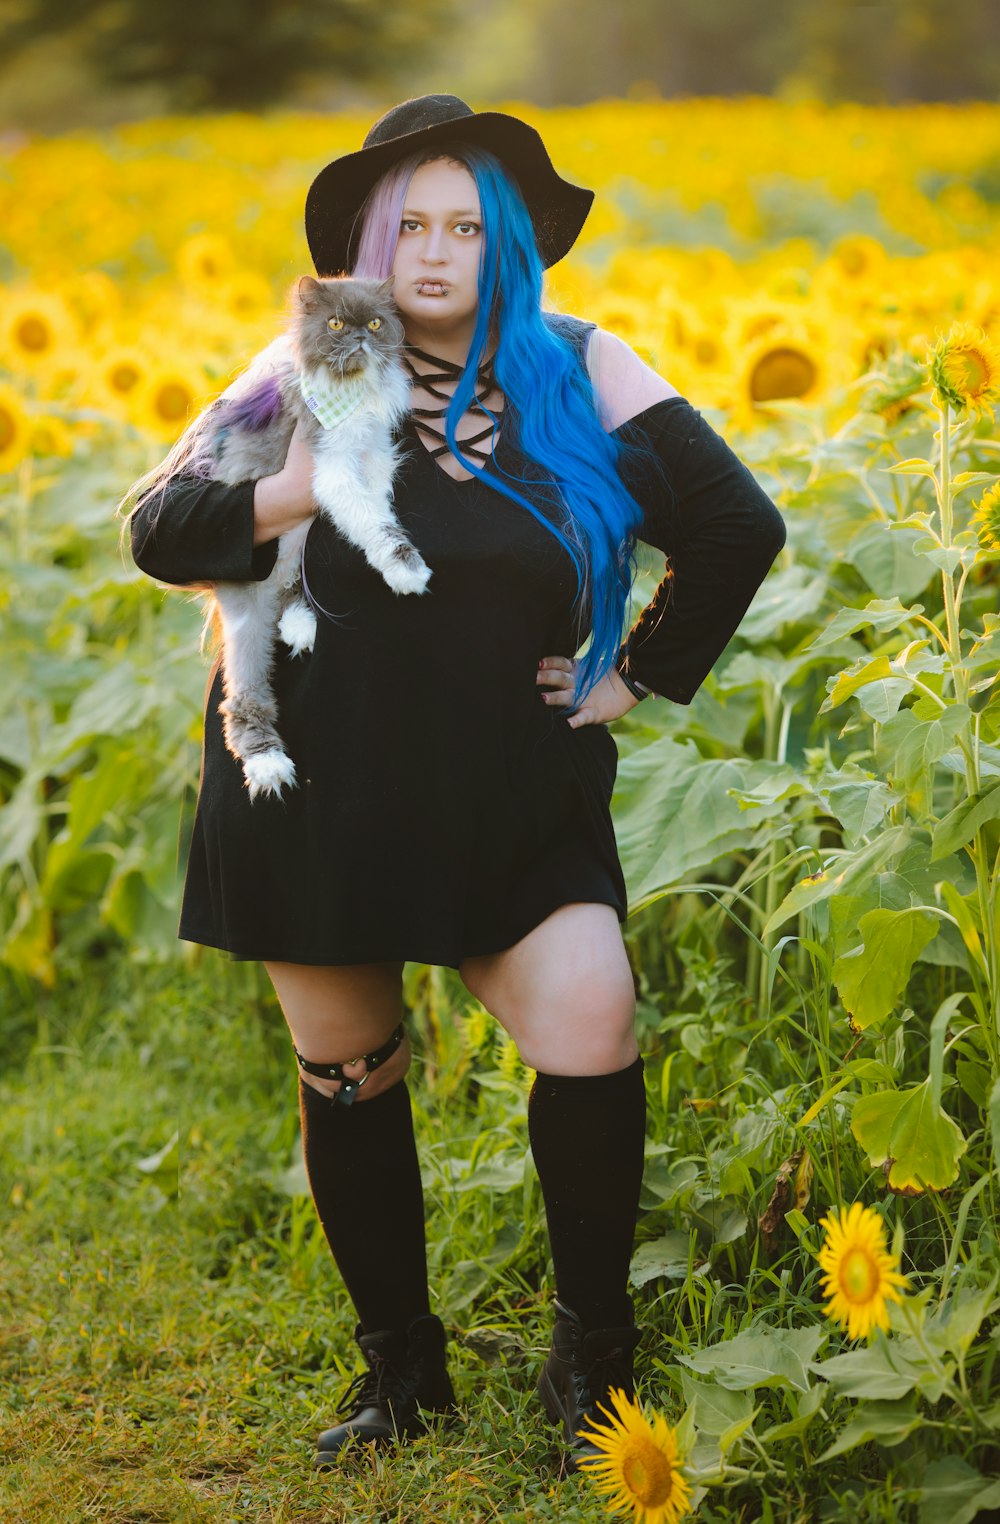 파란 머리를 가진 여자가 해바라기 밭에서 고양이를 안고 있다